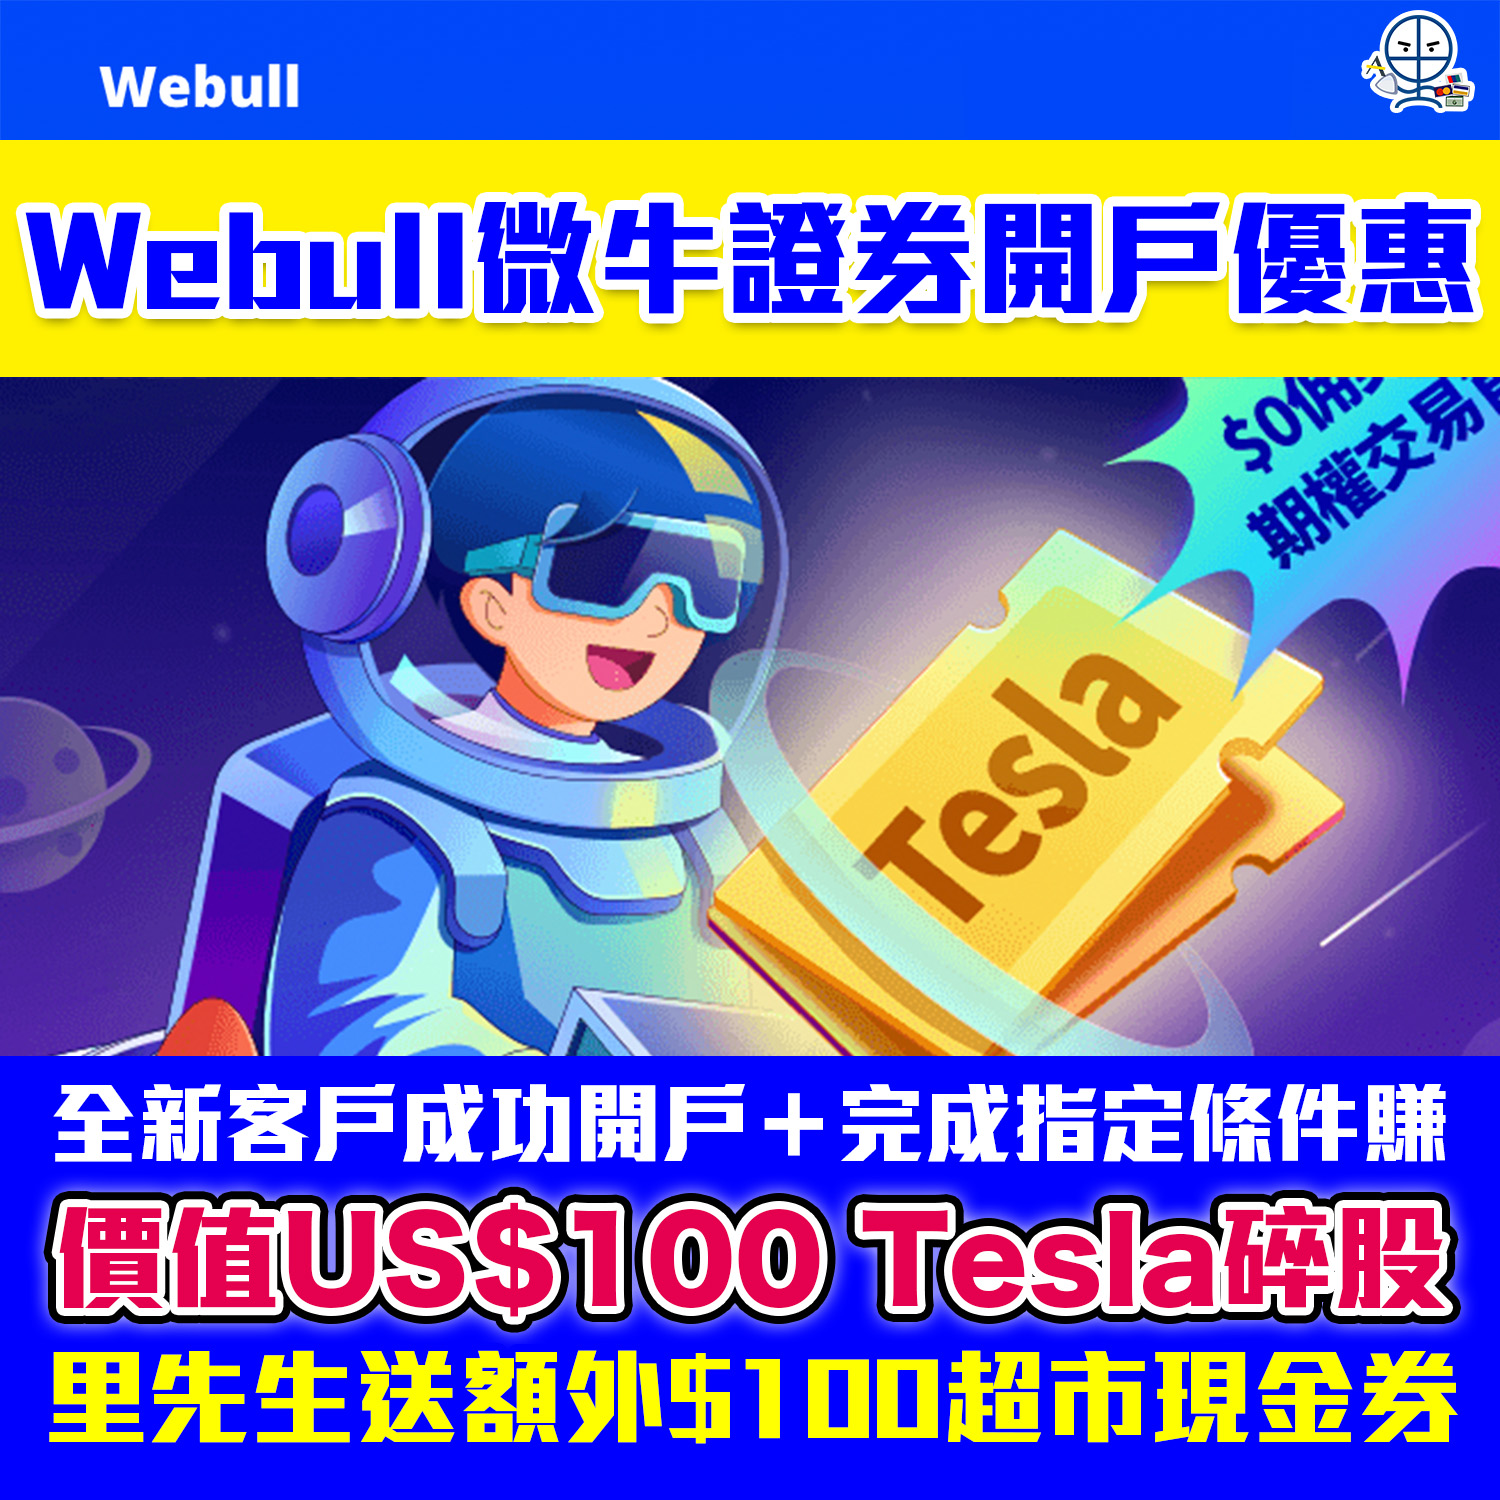 【Webull微牛證券開户優惠】額外HK$100超市現金券！迎新送Tesla股票